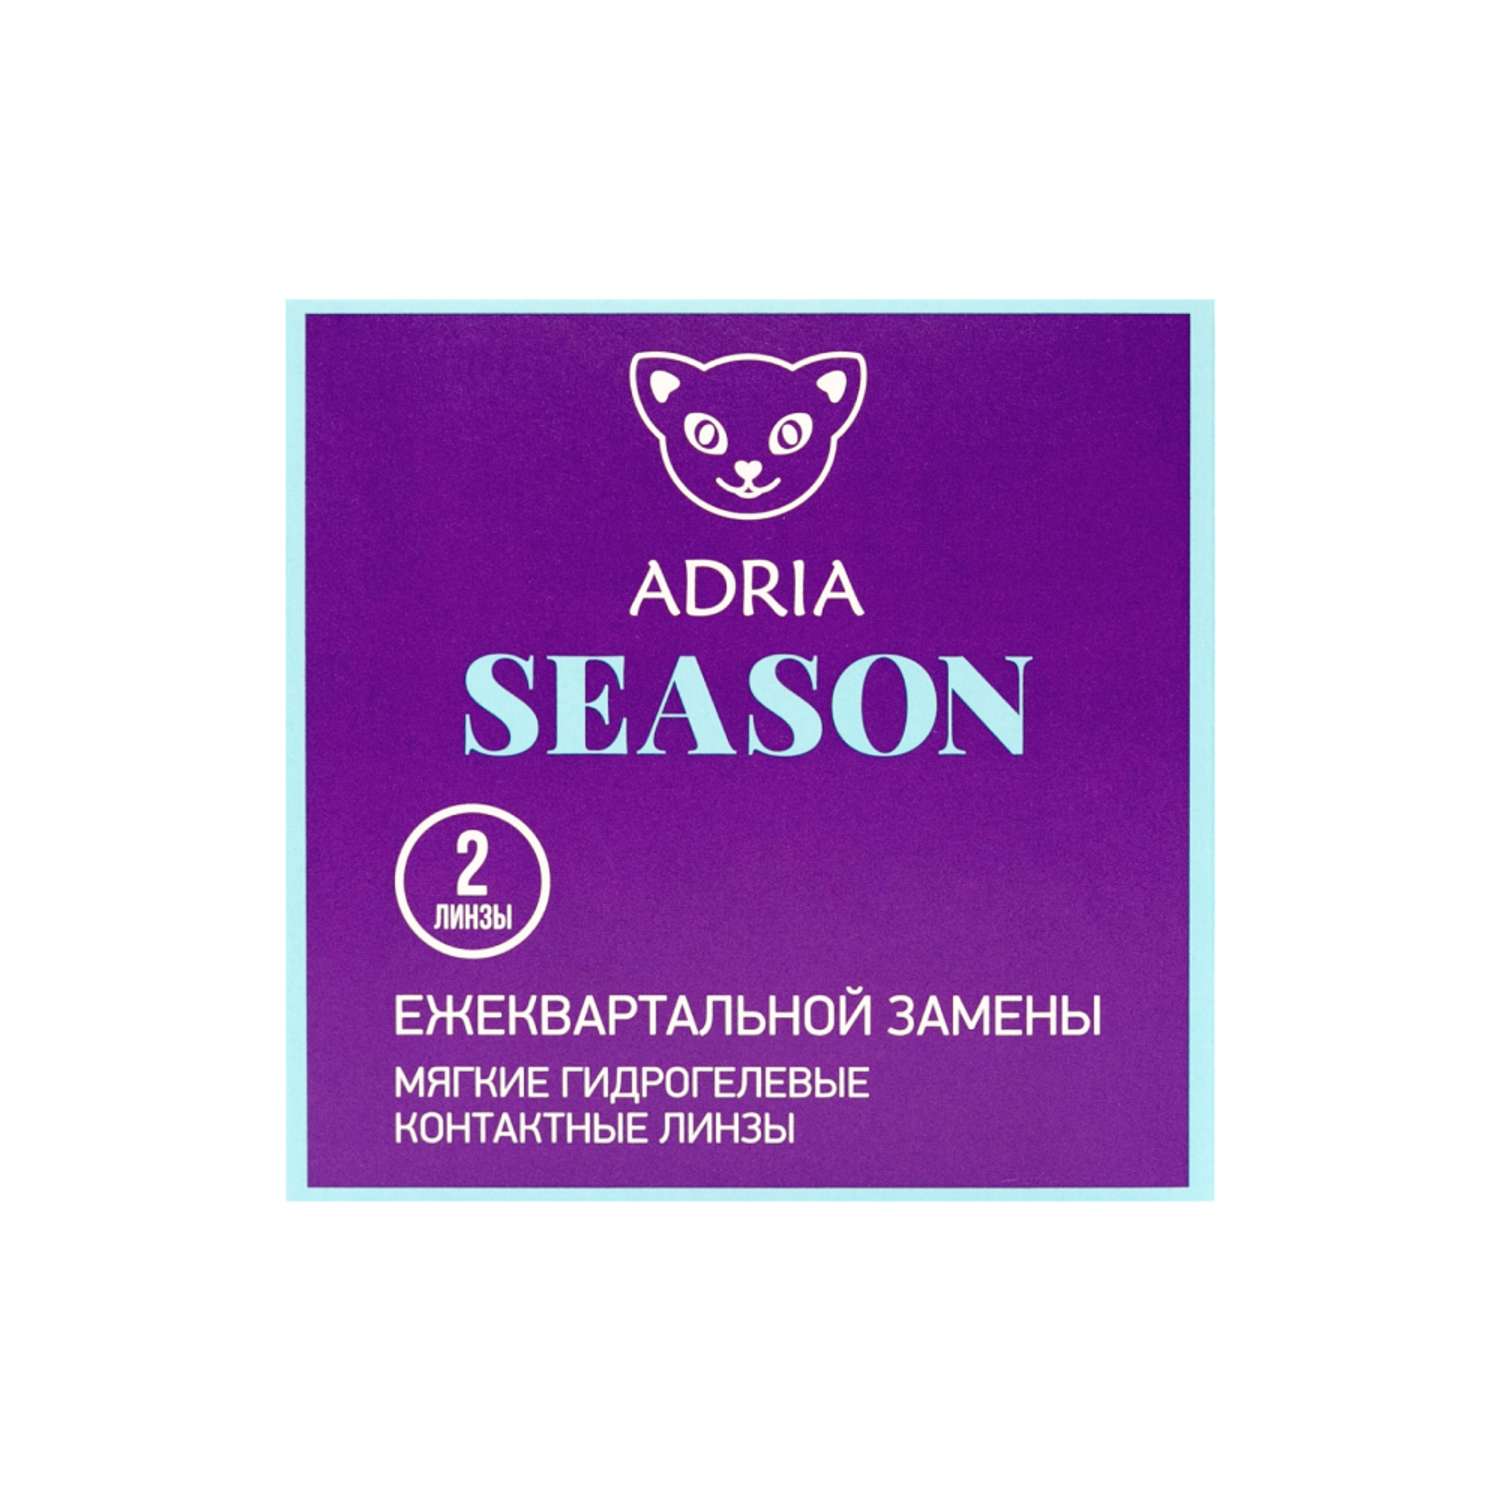 Контактные линзы ADRIA Season 2 линзы R 8.6 -1.00 - фото 6